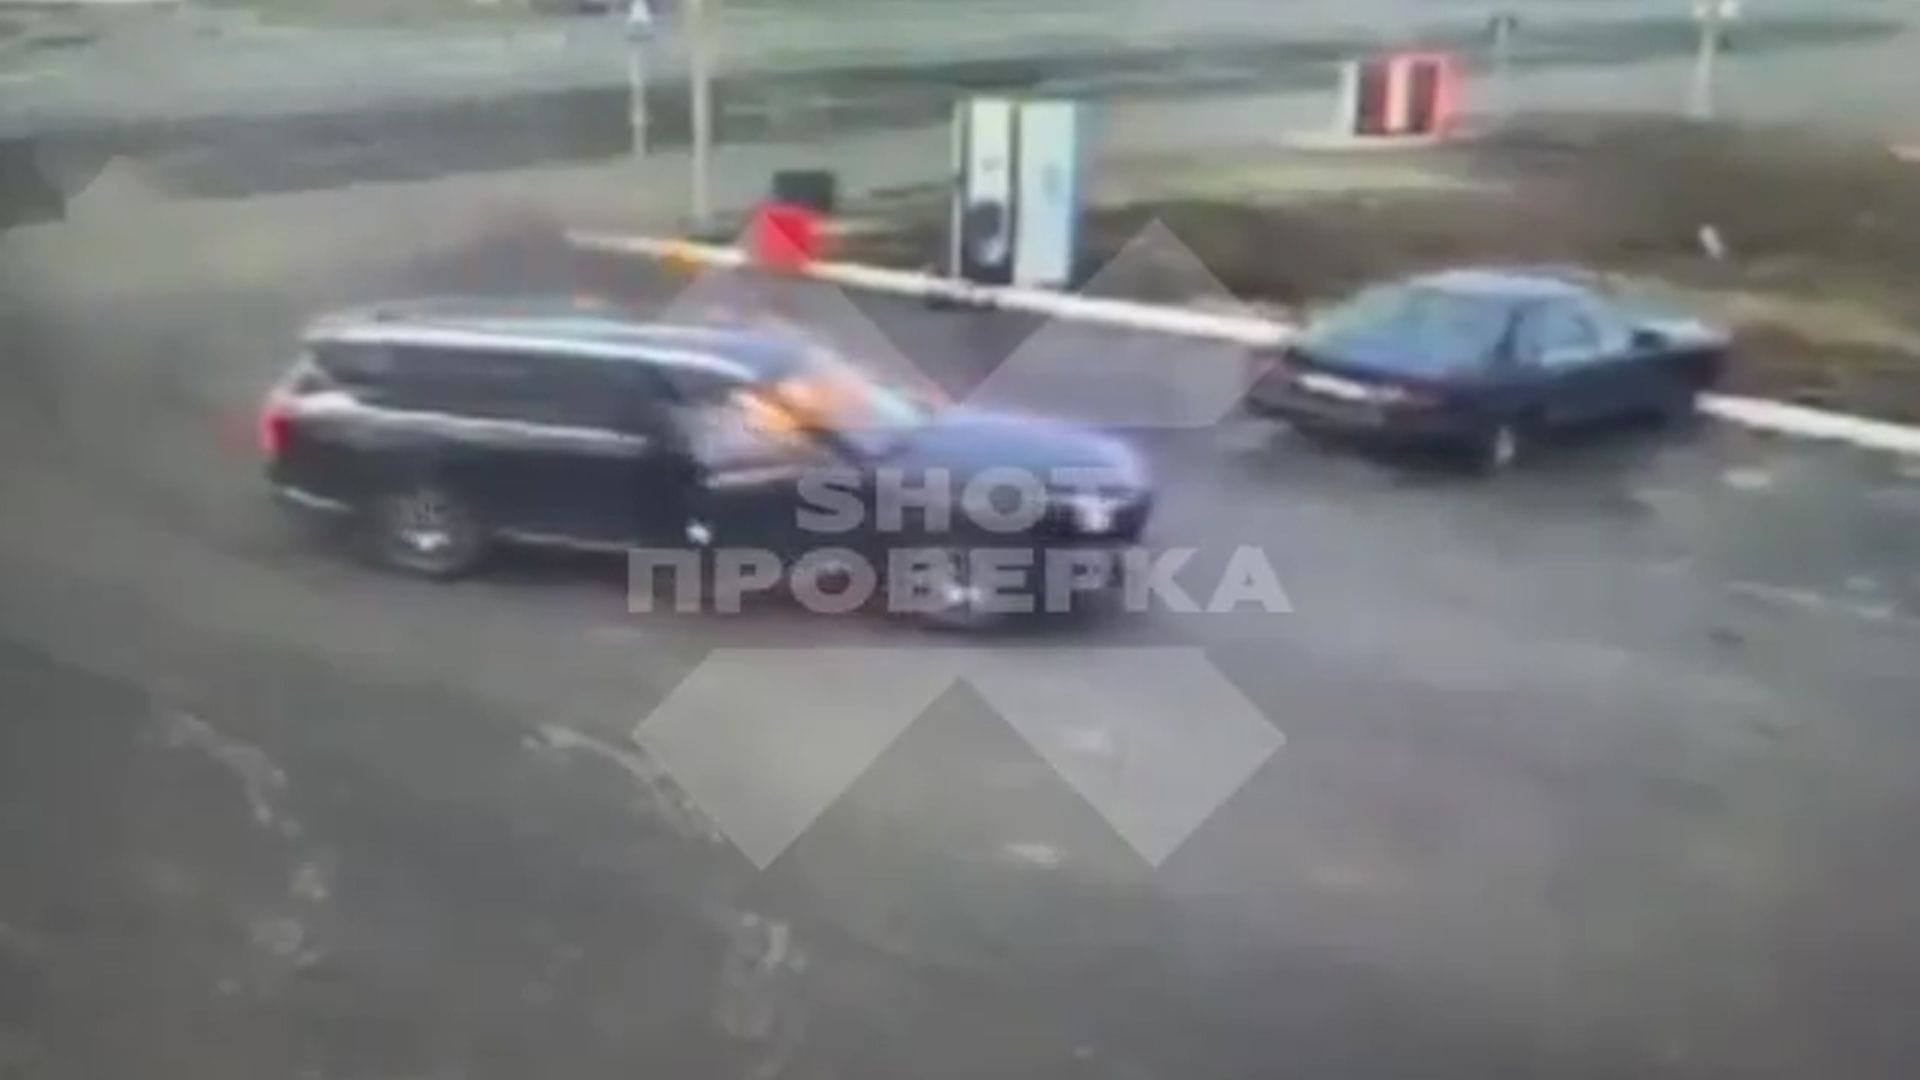 Russland: Chinesisches Auto fängt plötzlich Feuer während der Fahrt | Video